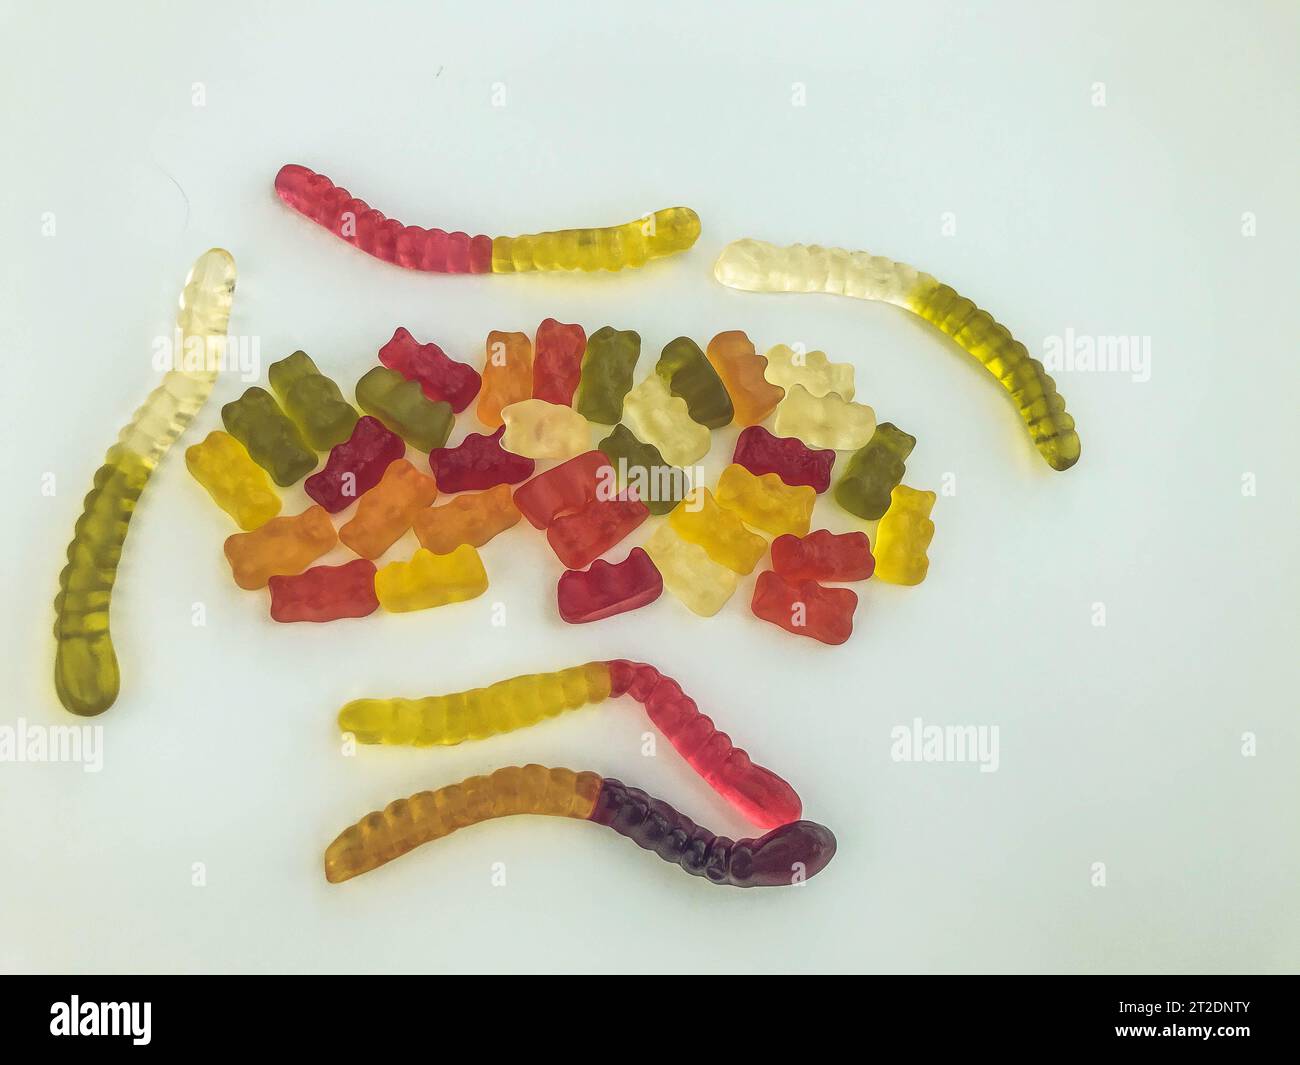 Gummibonbons liegen auf weißem mattem Hintergrund. Gelatinöse Würmer und Bären unterschiedlicher Farben miteinander verwoben. Köstliche kulinarische MAS Stockfoto